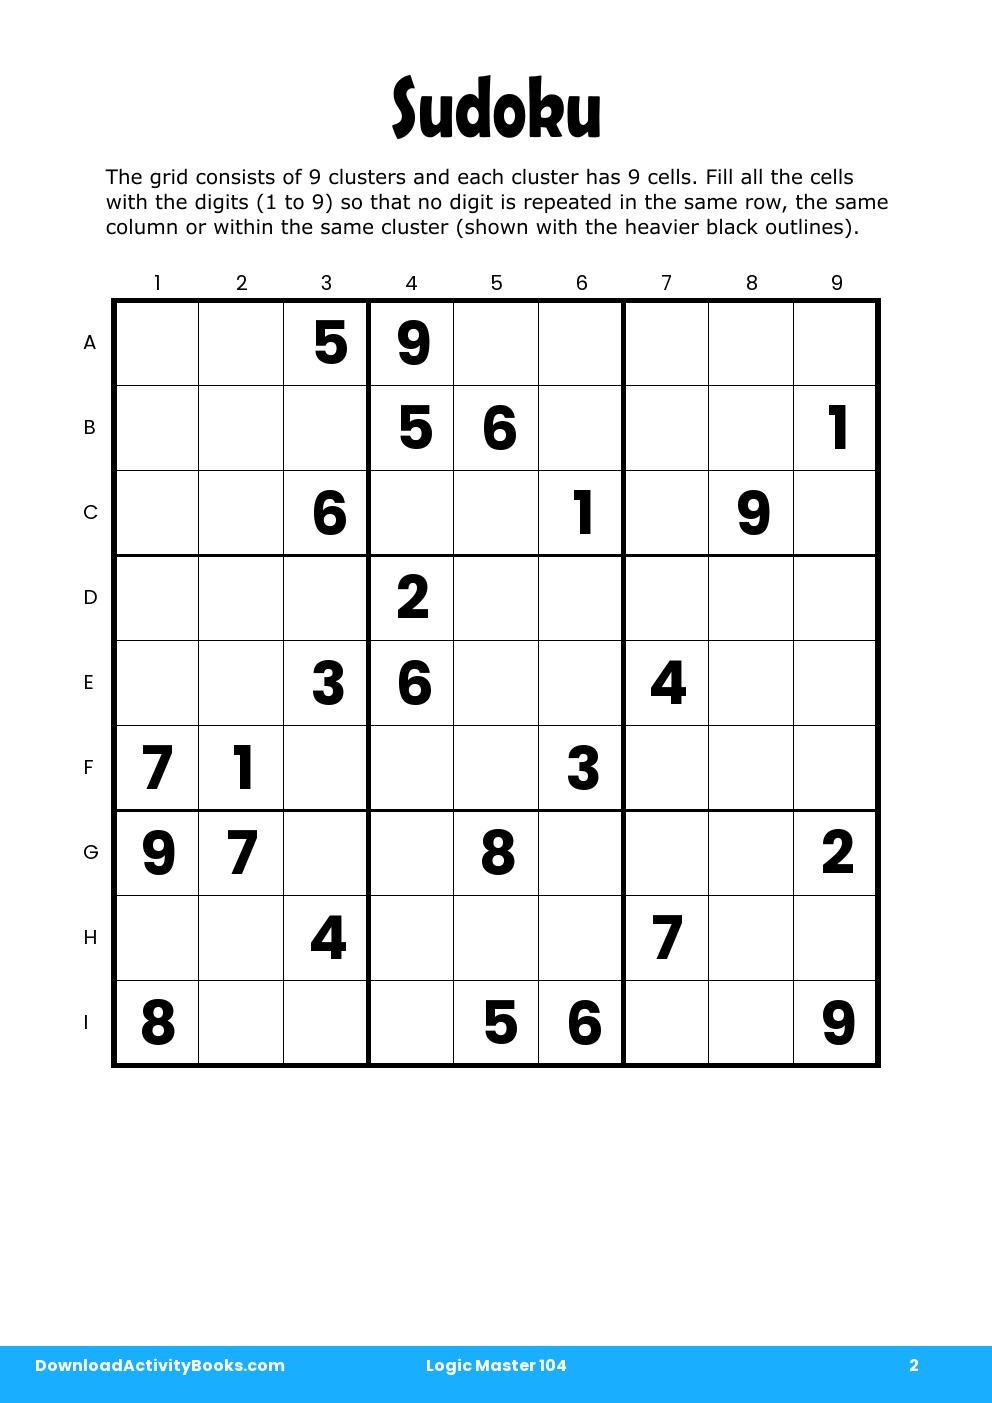 Sudoku in Logic Master 104